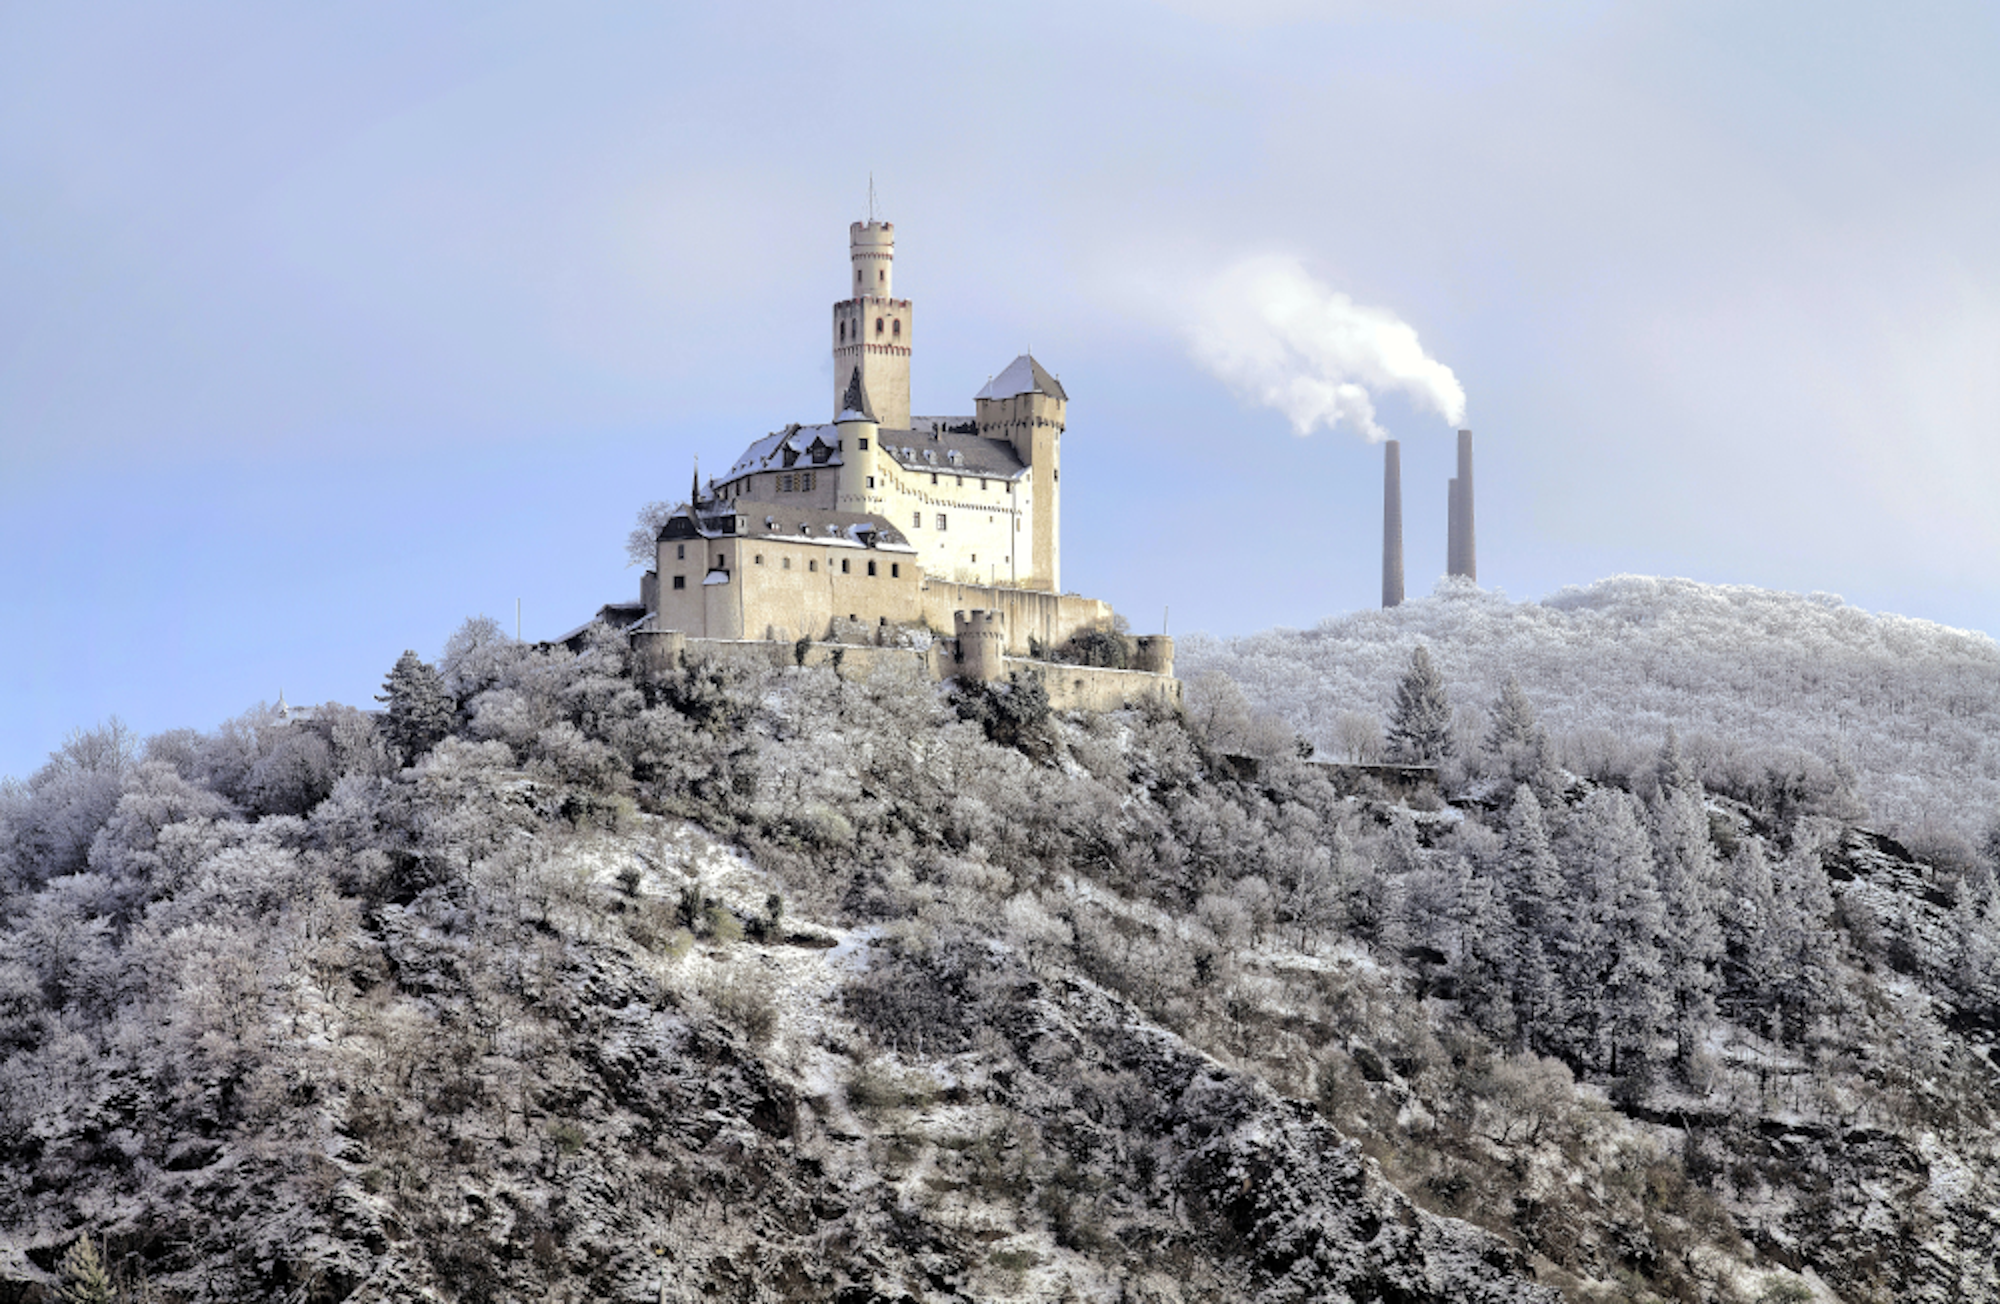 Marksburg im Winter, im Hintergrund rauchende Schornsteine